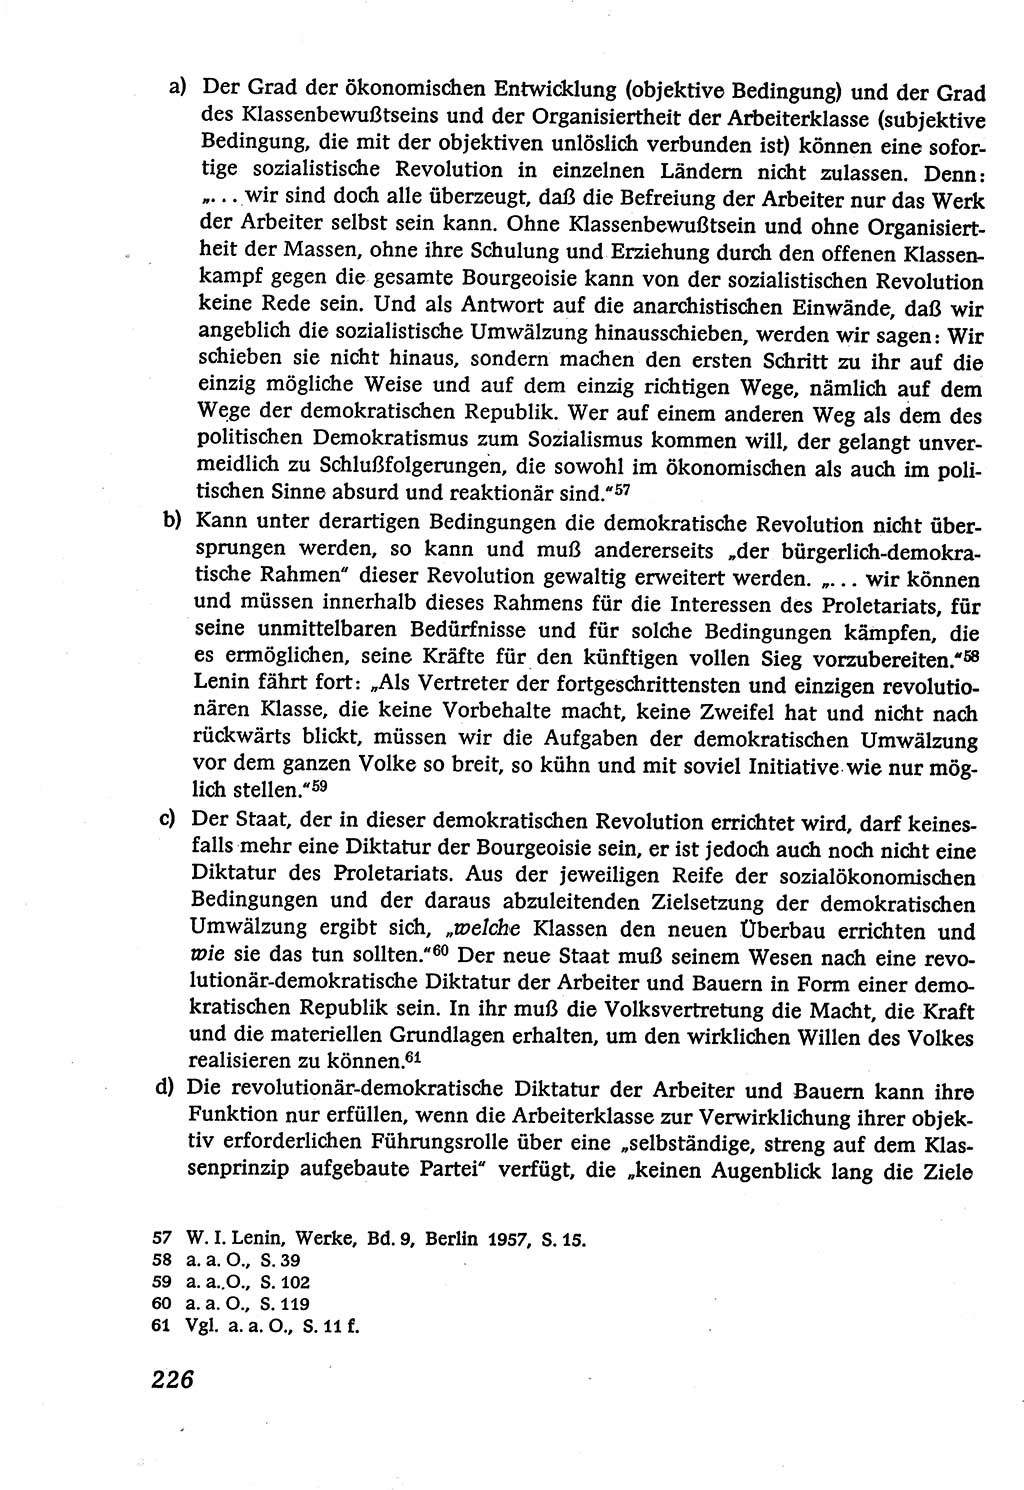 Marxistisch-leninistische (ML) Staats- und Rechtstheorie [Deutsche Demokratische Republik (DDR)], Lehrbuch 1980, Seite 226 (ML St.-R.-Th. DDR Lb. 1980, S. 226)